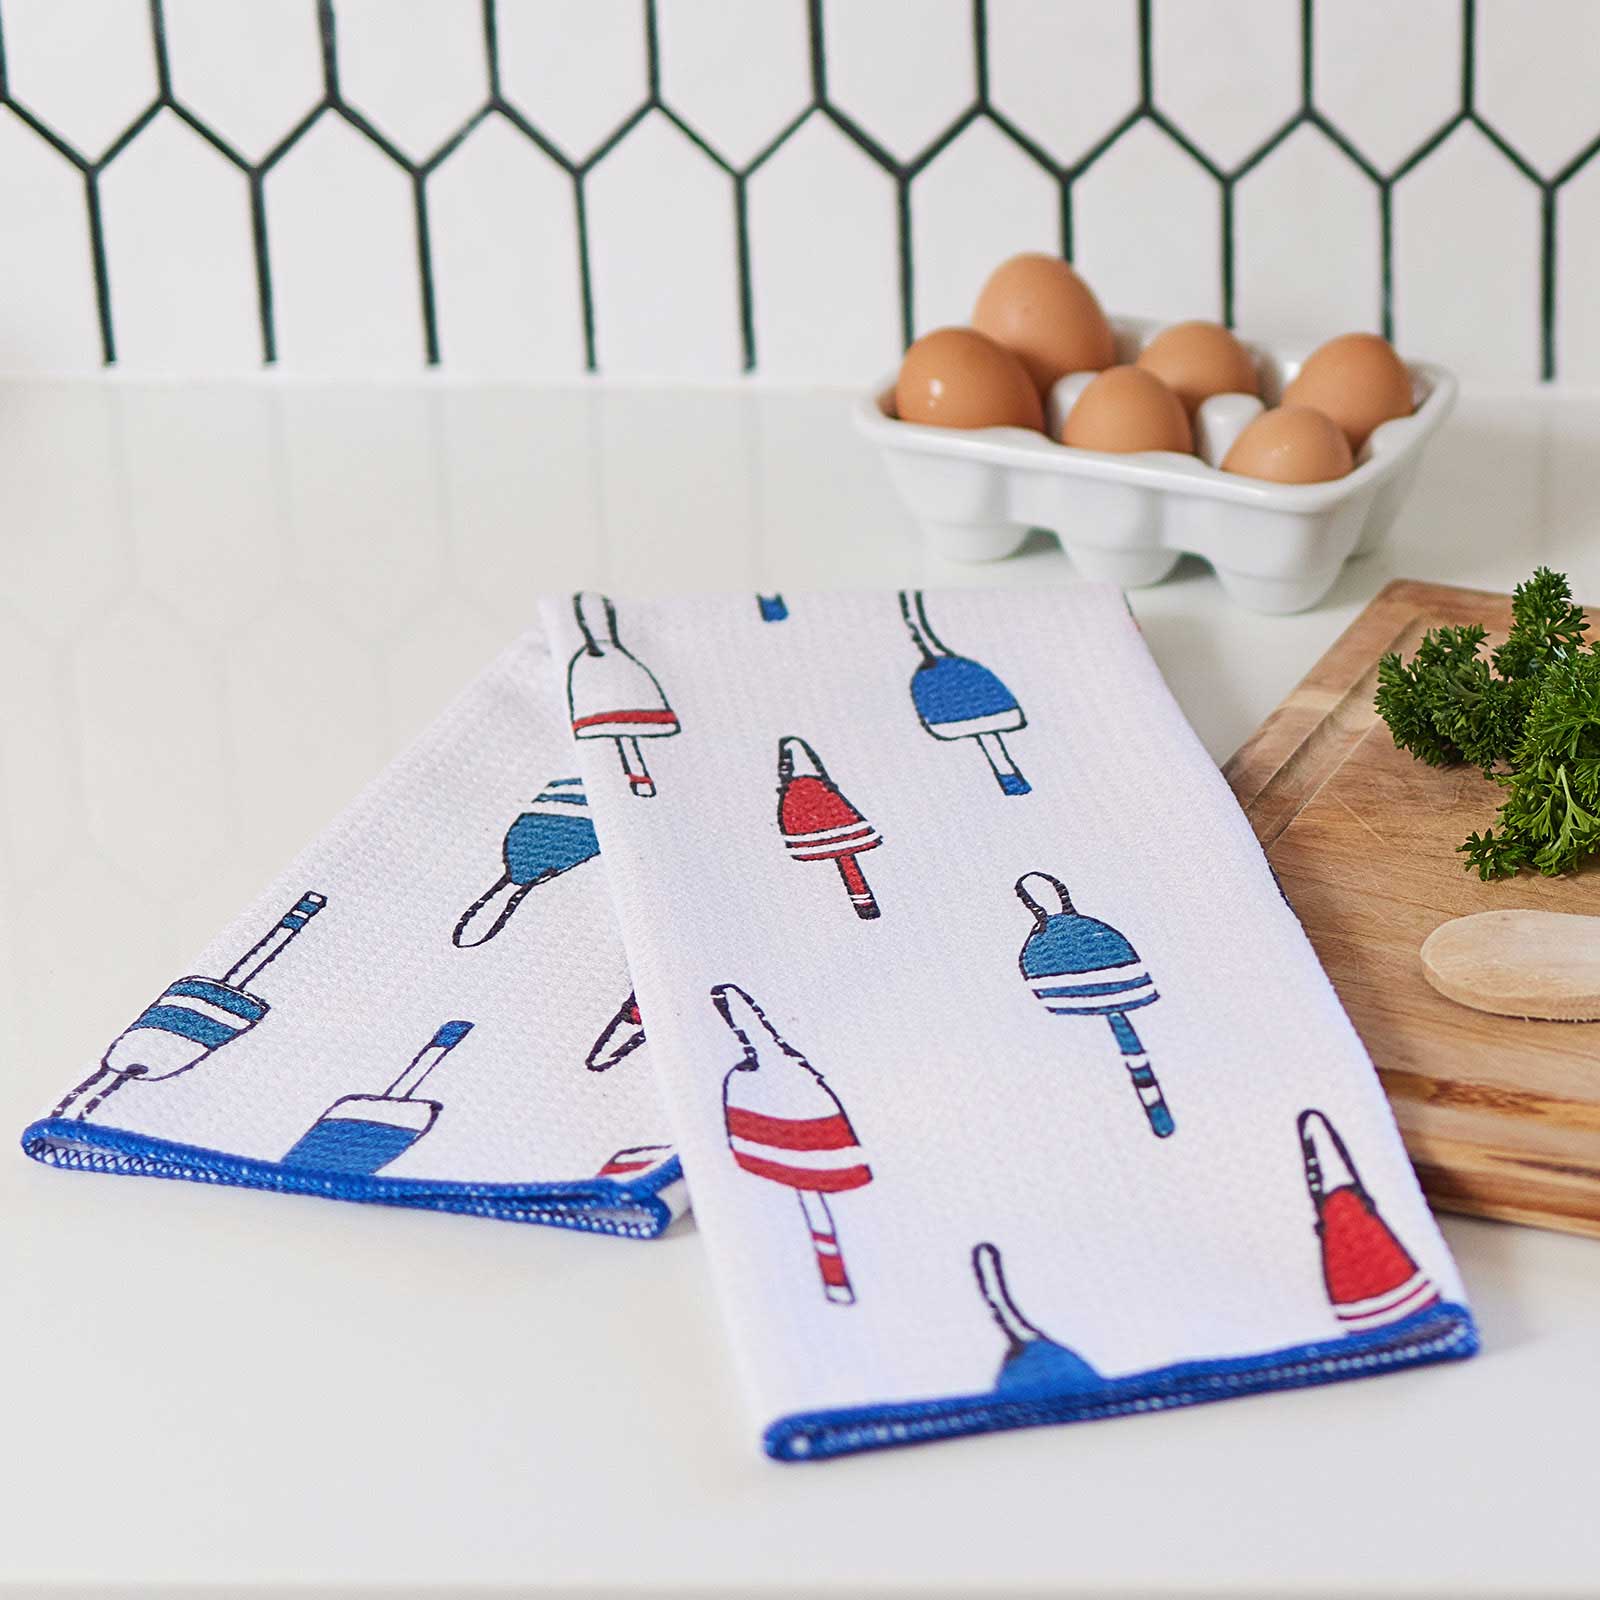 Tea Towels - Kitchen Towel Sets